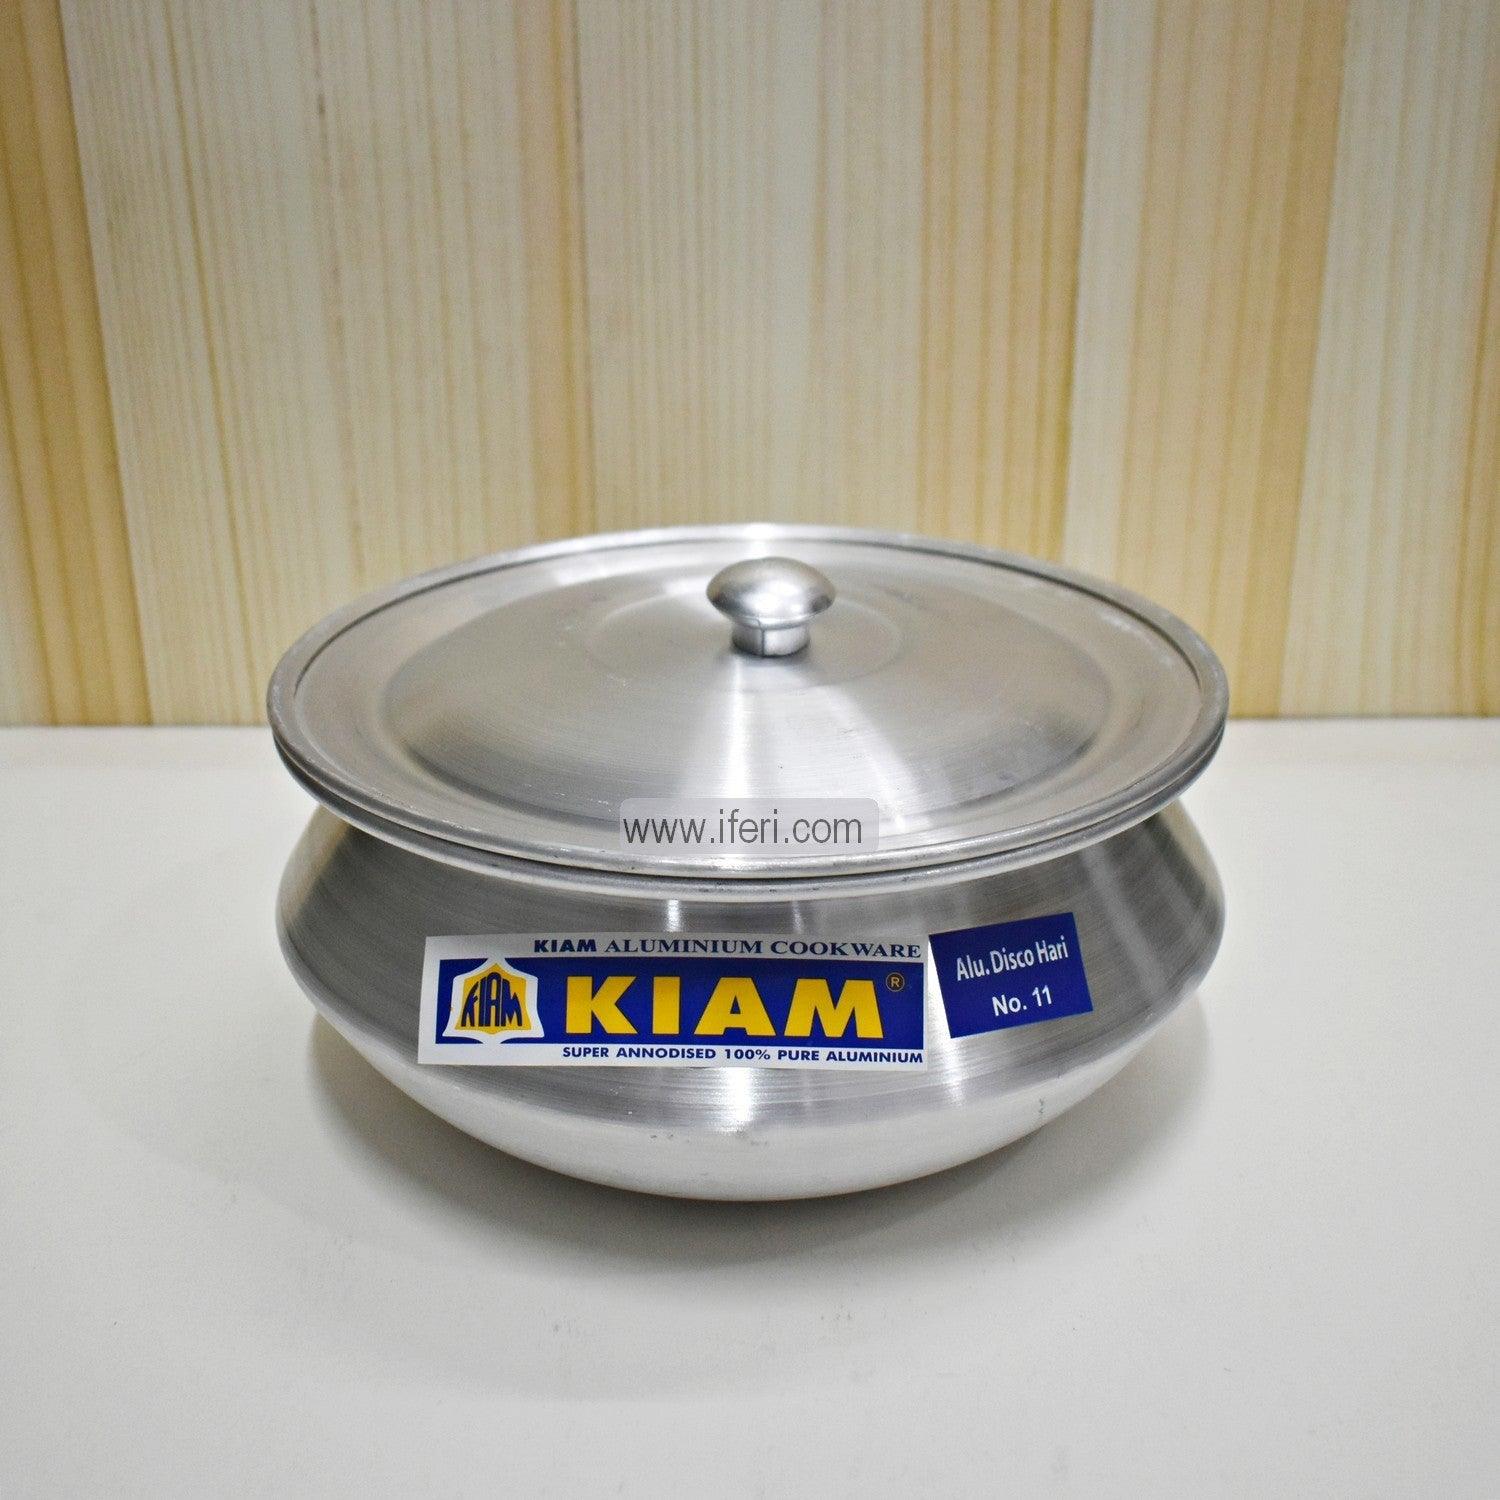 7 cm Kiam Aluminium Hari Cookware With Aluminium Lid BCG02221 Price in Bangladesh - iferi.com